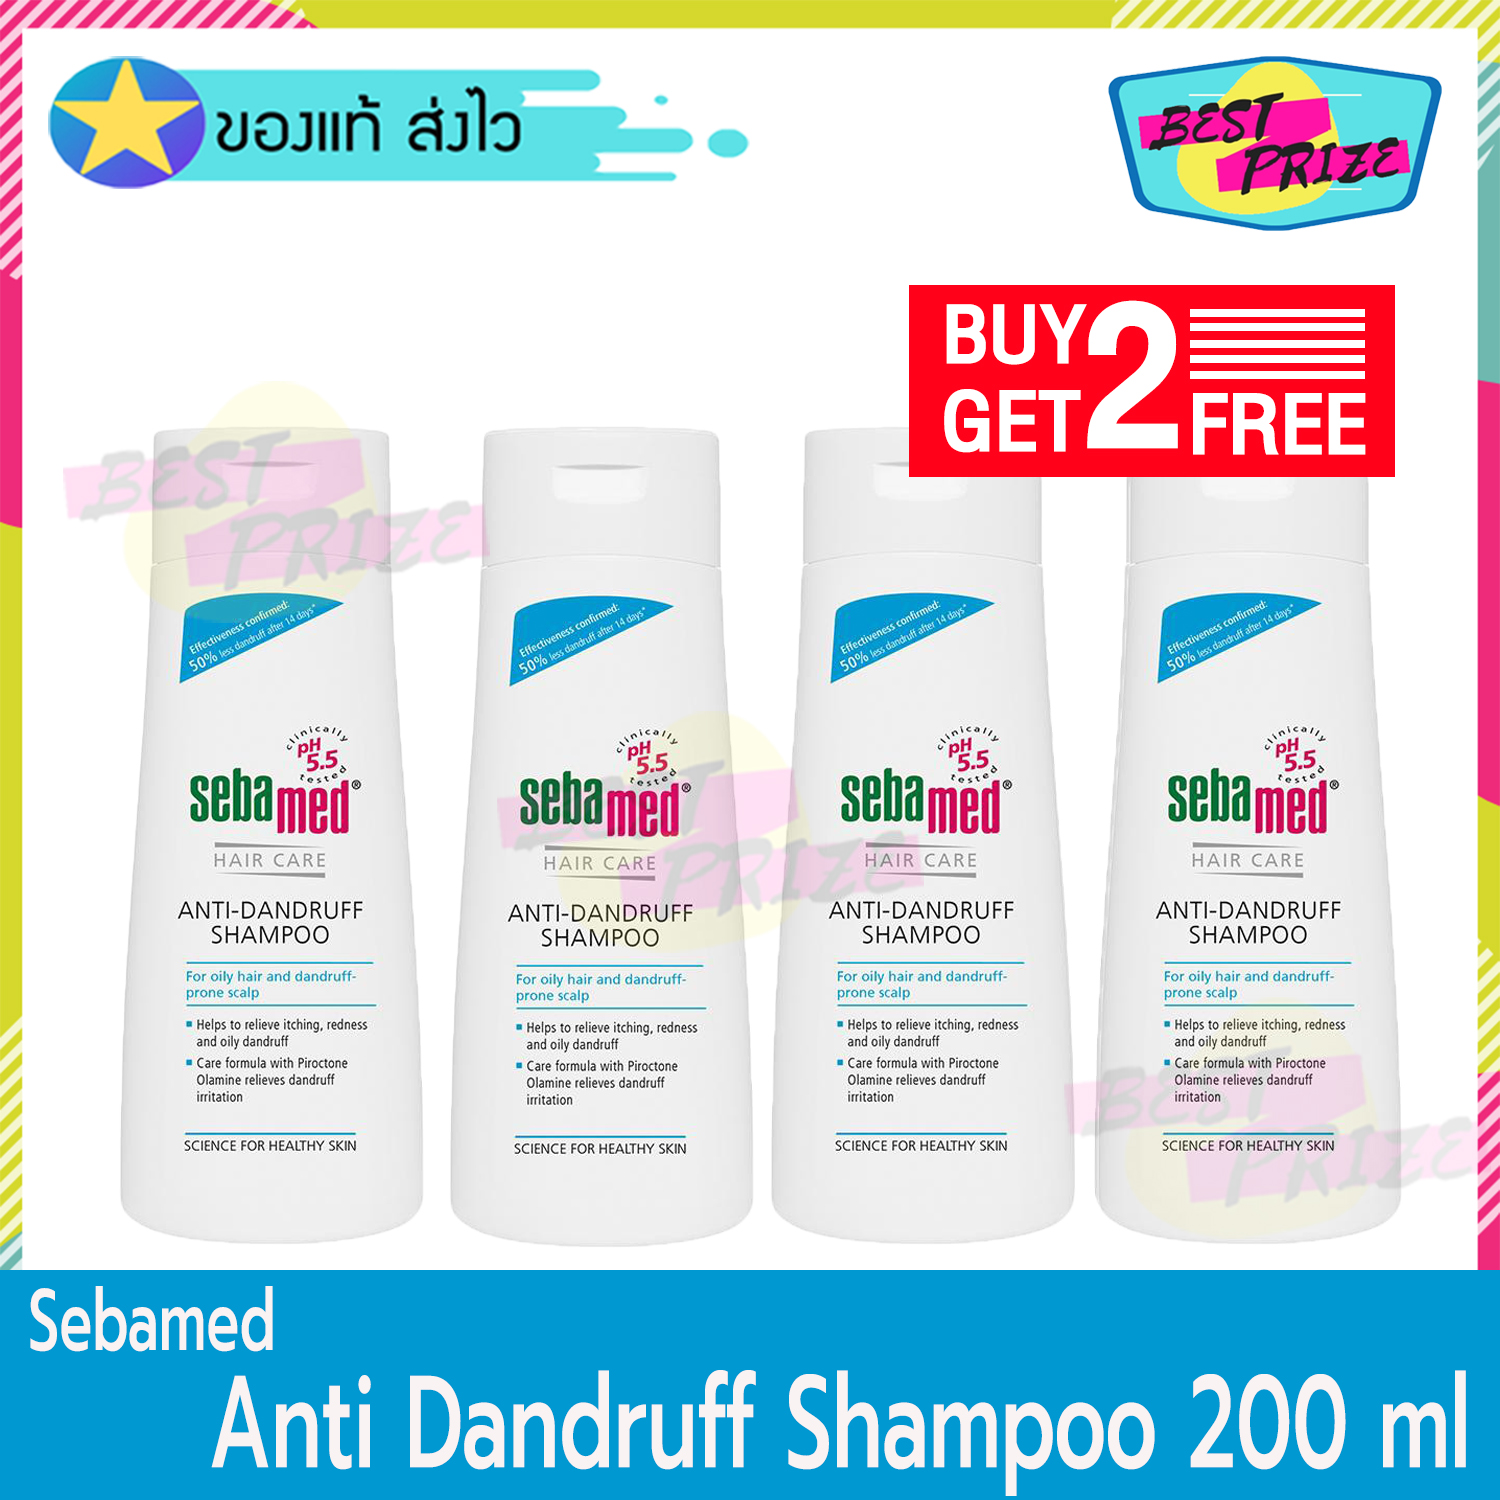 ราคา Sebamed Anti - Dandruff shampoo 200 ml (จำนวน 4 ขวด) ซีบาเมด แอนตี้ แดนดรัฟฟ์ แชมพู แชมพูสระผม แชมพูขจัดรังแค